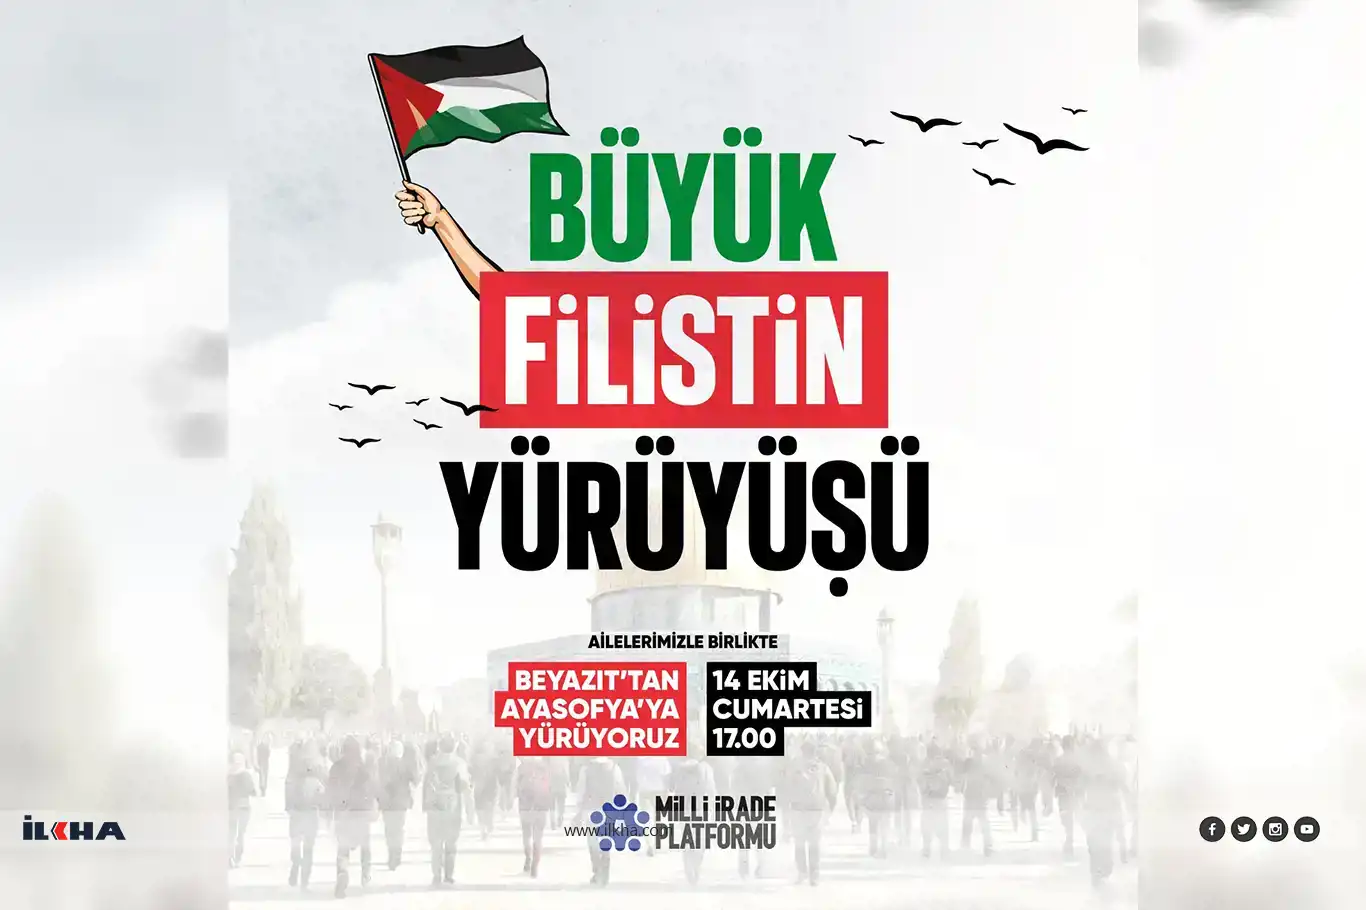 İstanbul'da bugün "Büyük Filistin Yürüyüşü" yapılacak